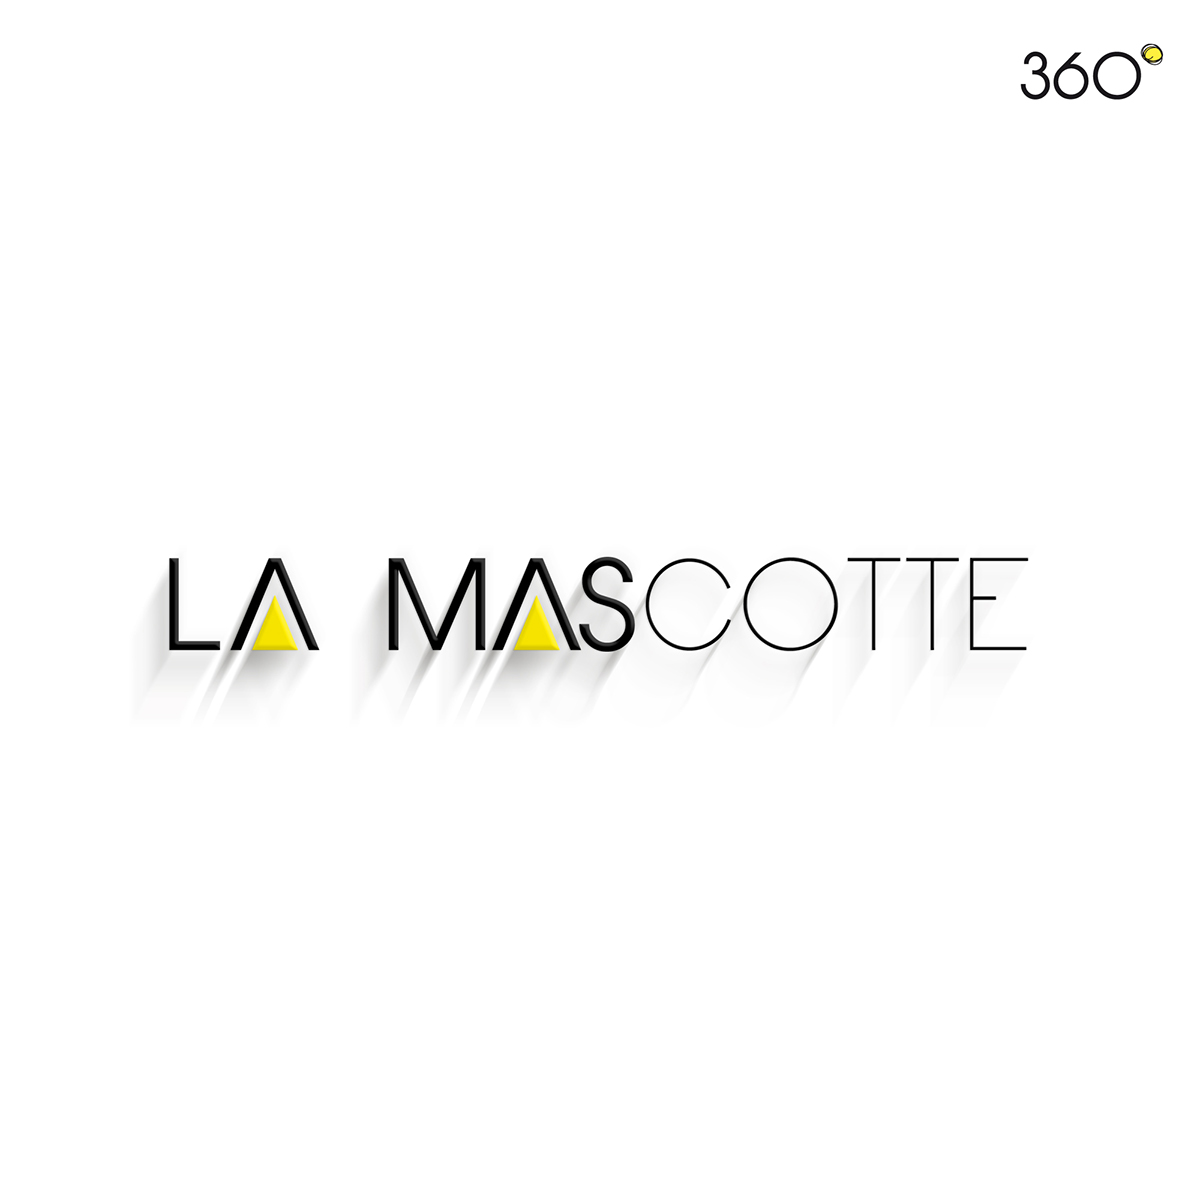 la mascotte mascotte design graphic logo print Coffee tunisia 360° decoration Salon de thé tearoom Cofeshop visual identity Sfax